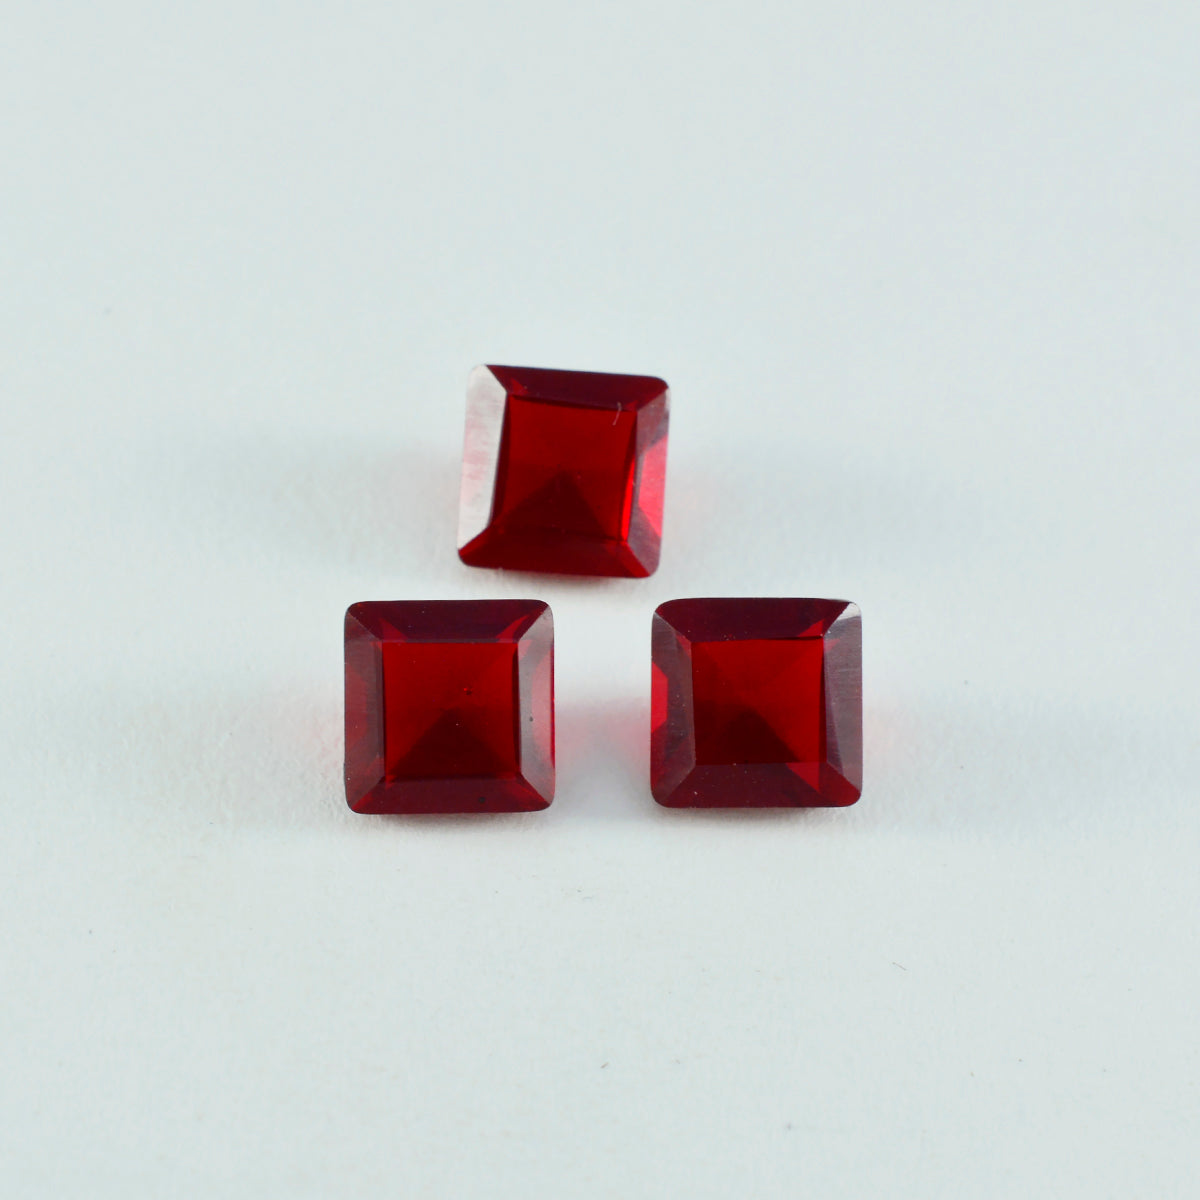 Riyogems 1PC Red Ruby CZ gefacetteerd 9x9 mm vierkante vorm prachtige kwaliteit losse edelsteen